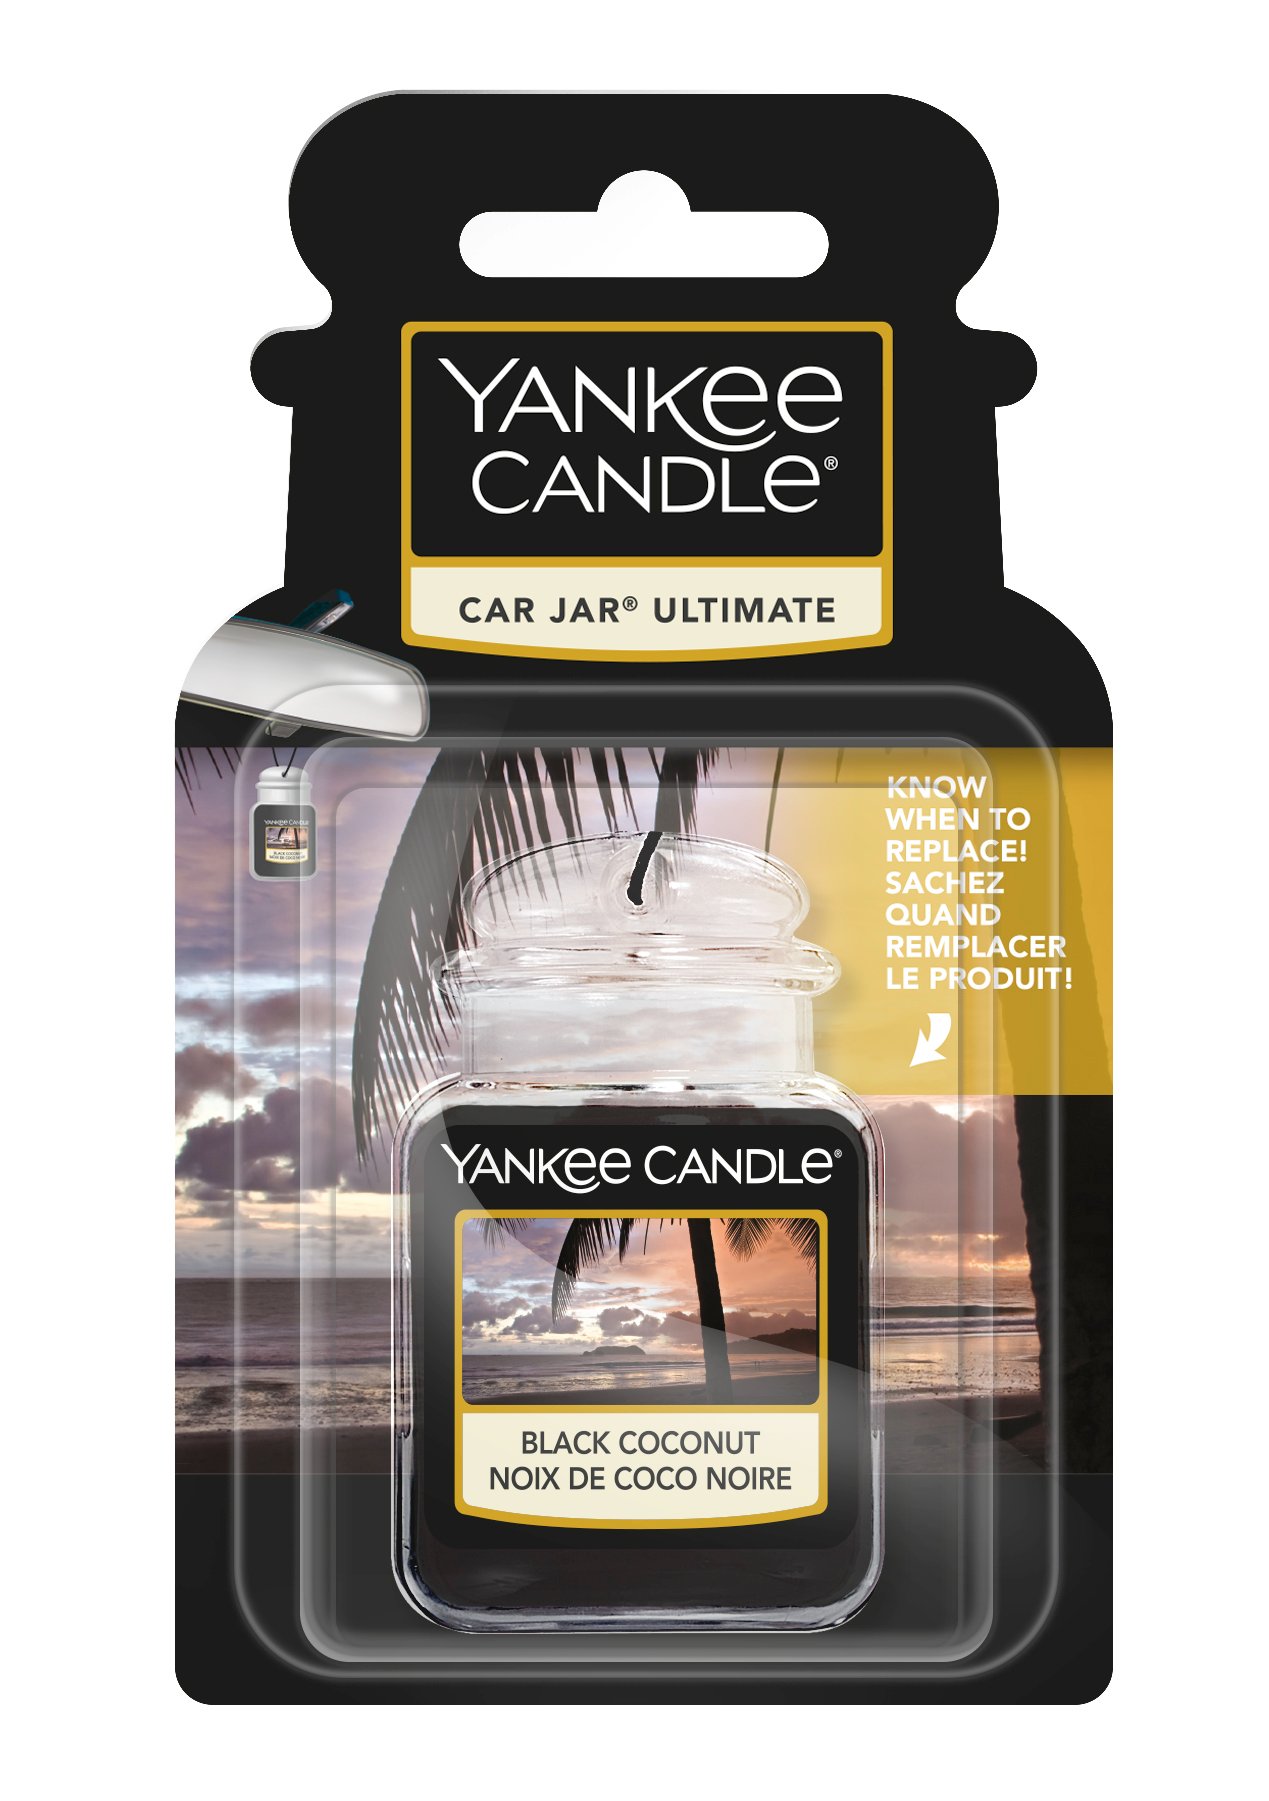 Der stylische Auto-Duft von Yankee Candle ist heute fast um die